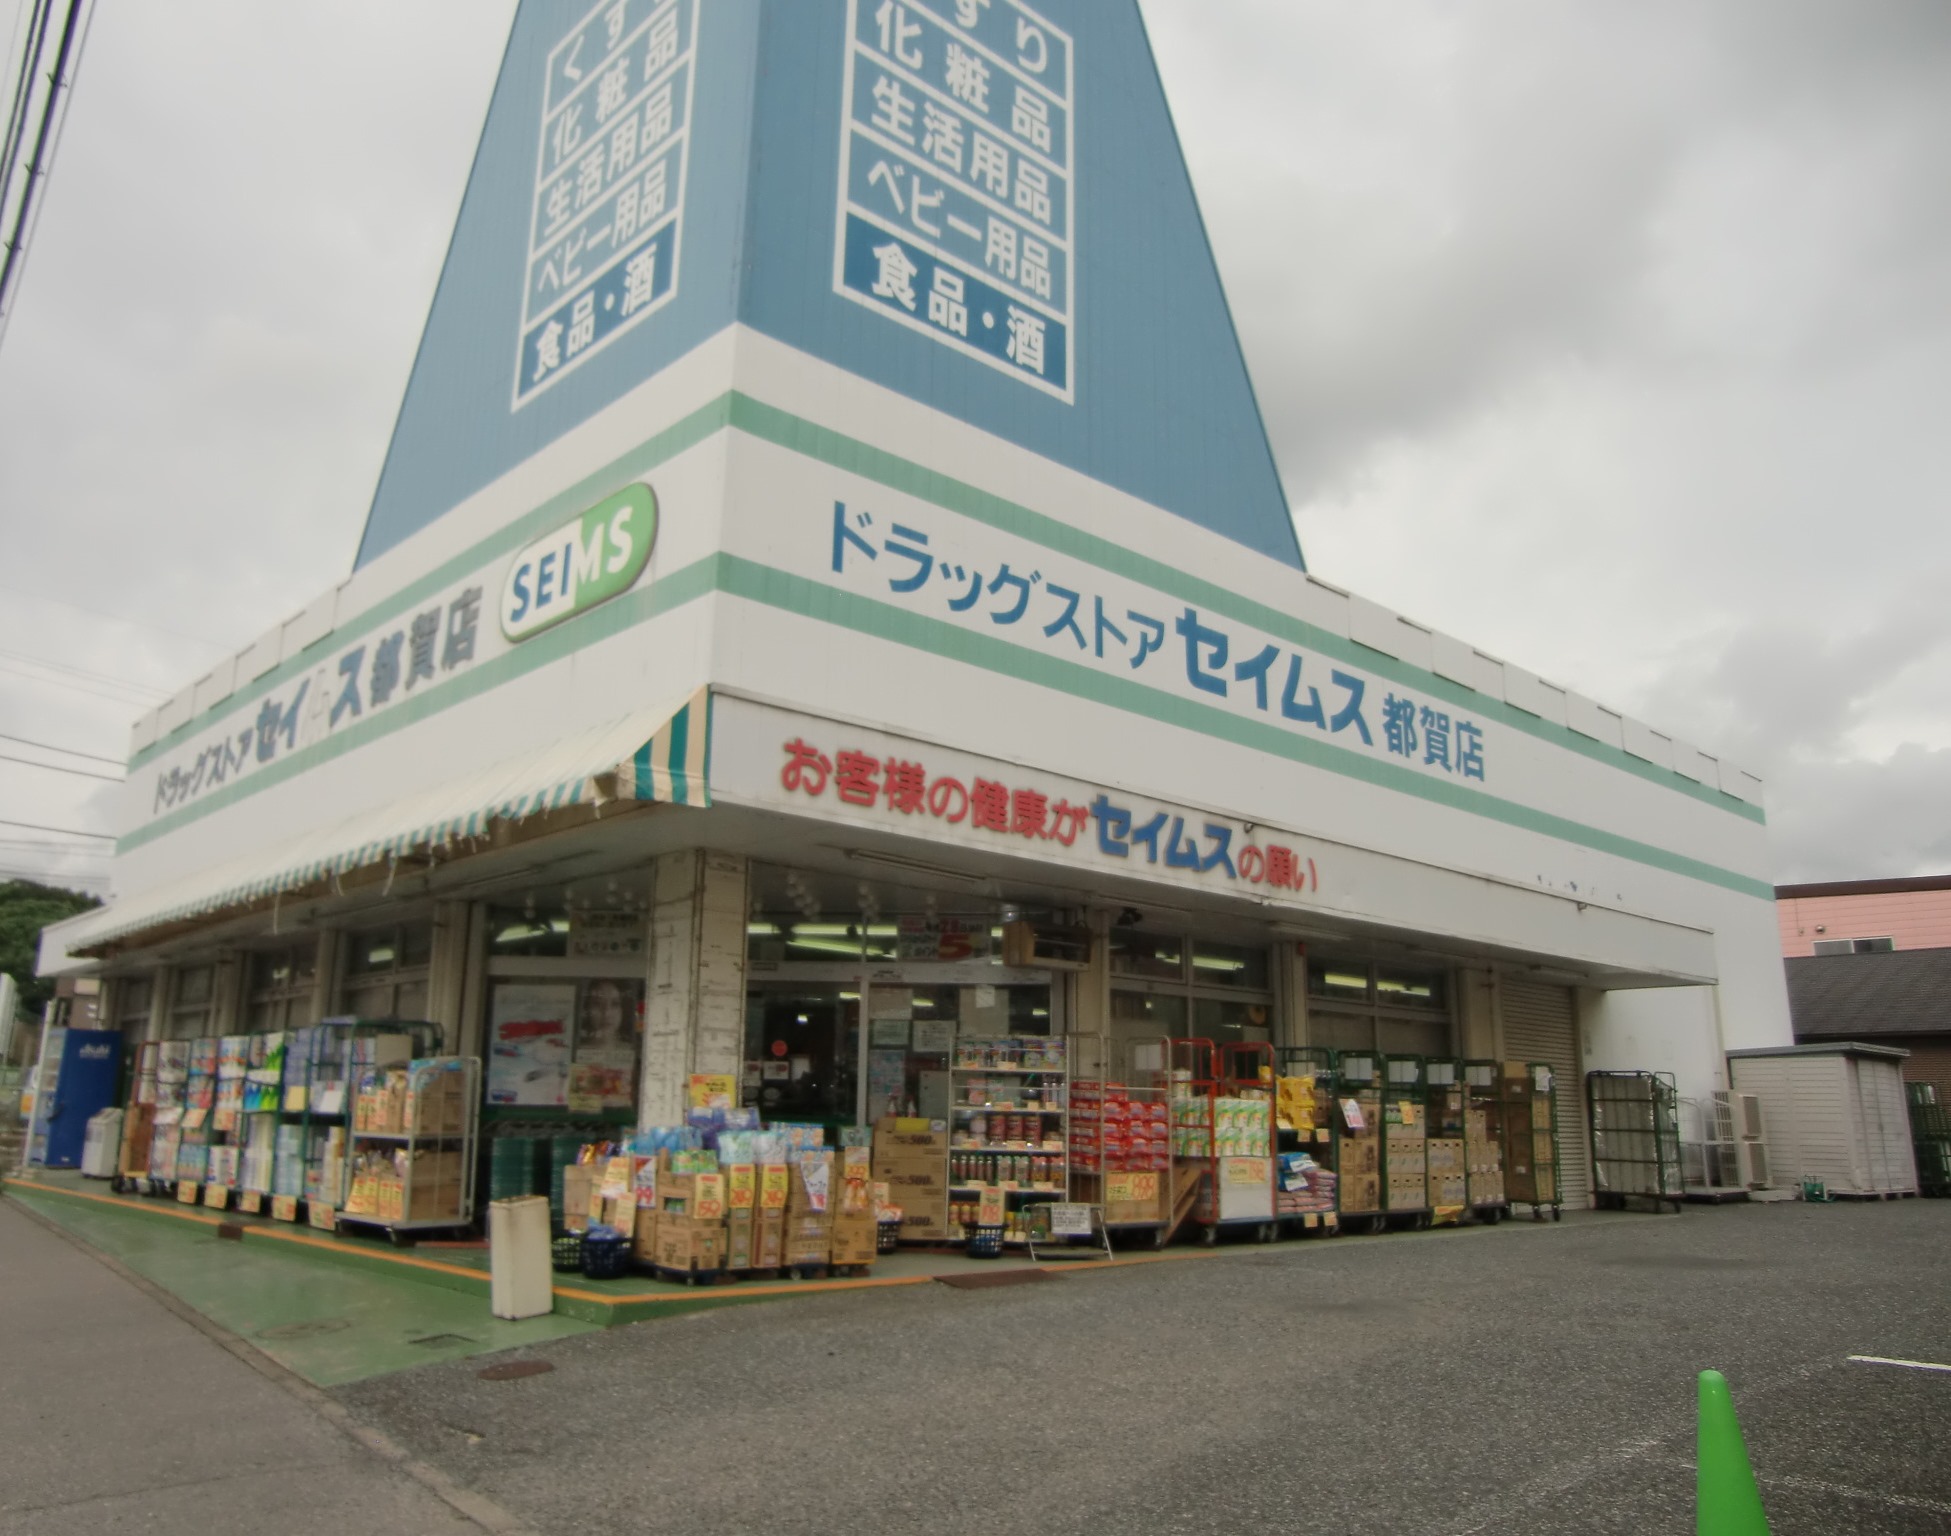 Dorakkusutoa. Drag Seimusu Tsuga shop 698m until (drugstore)